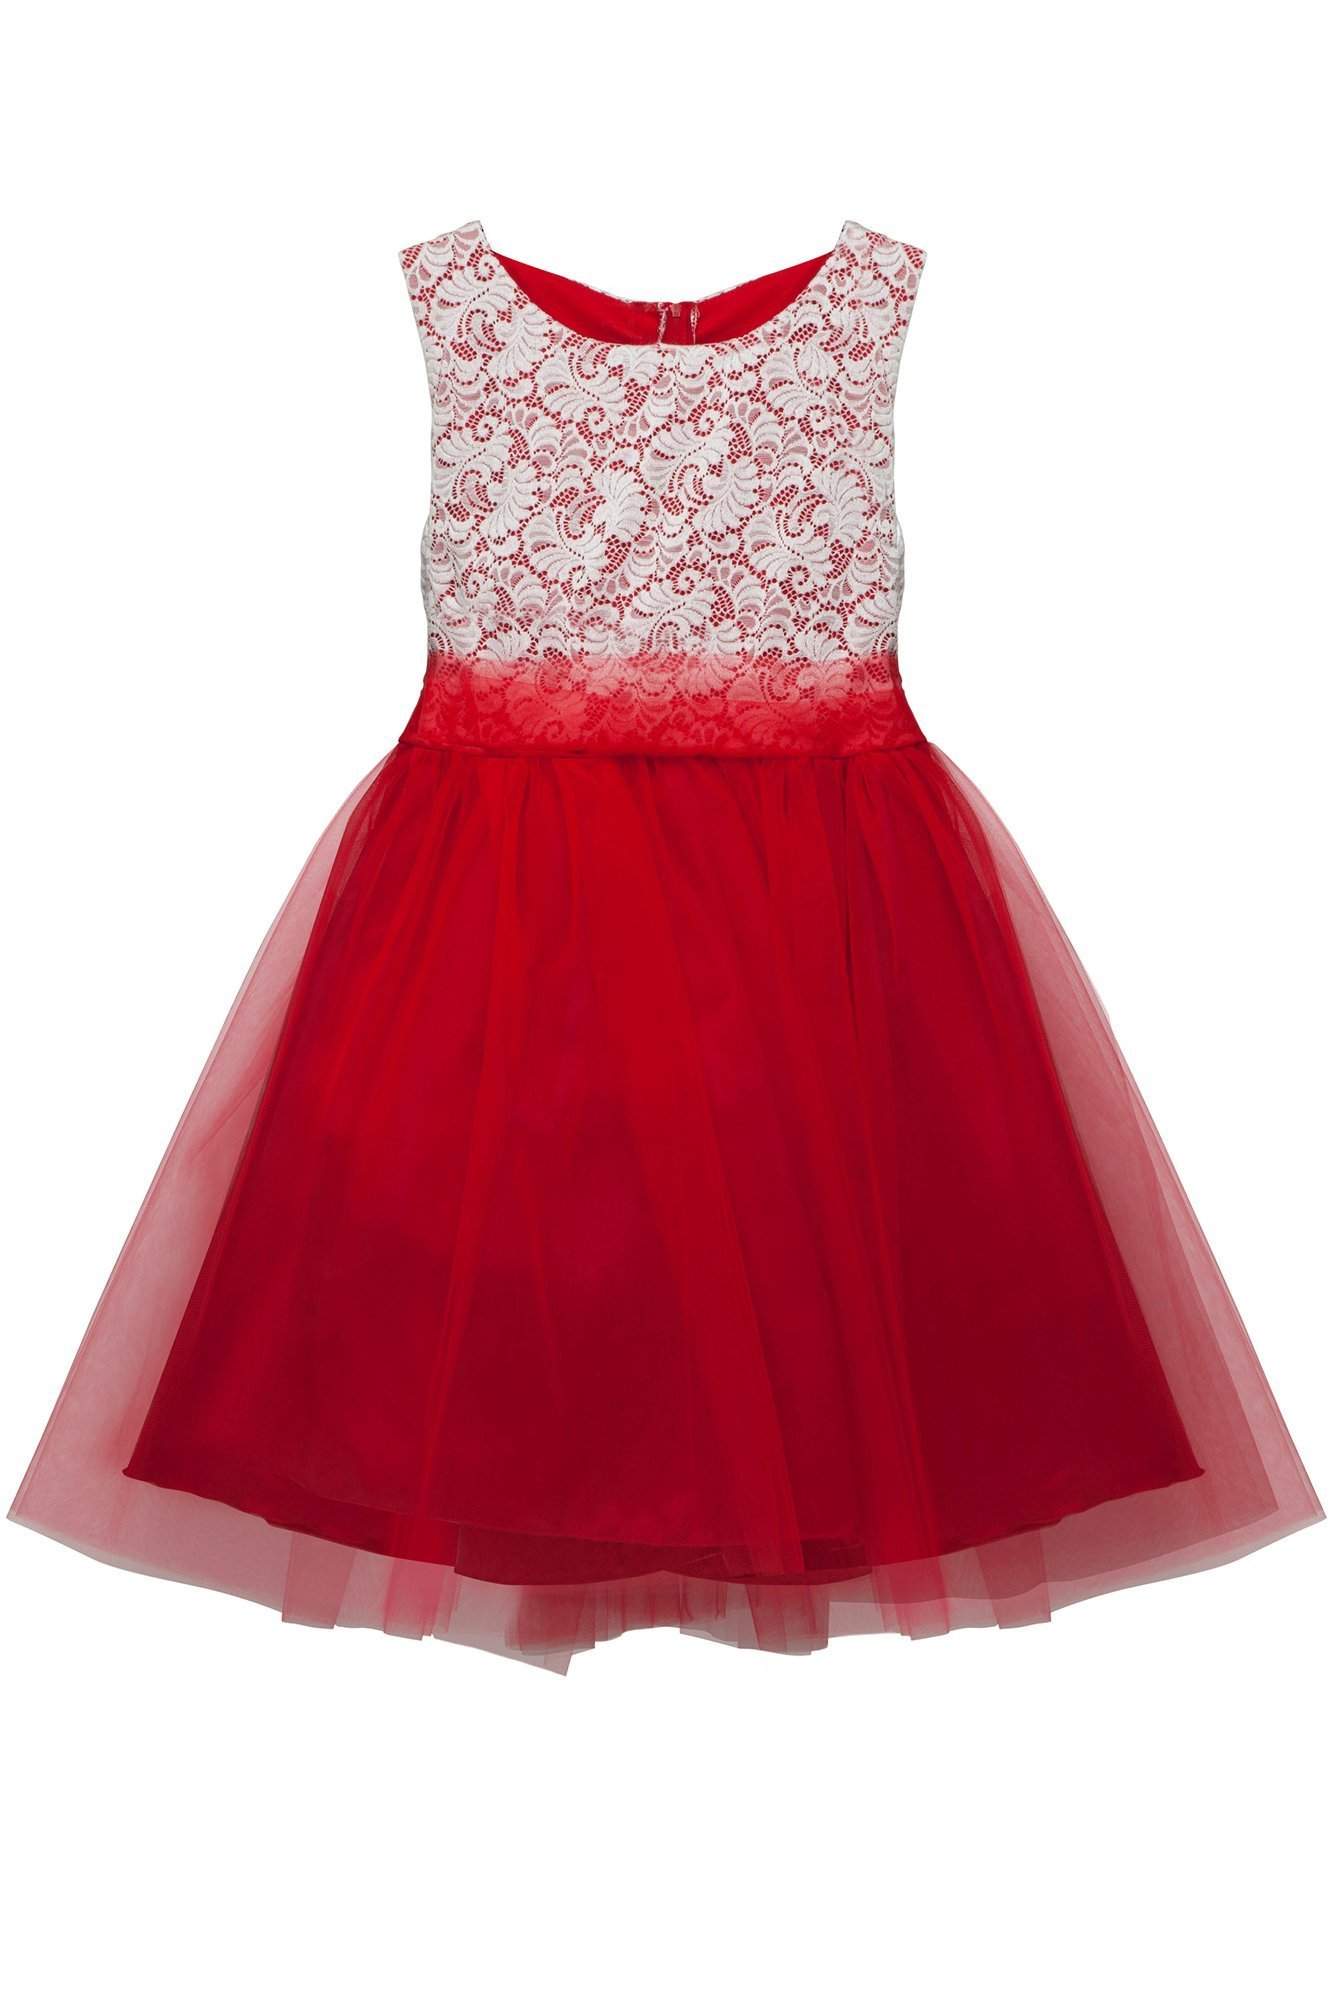 Stretch Lace Plus Size Girls Dress – Kid's Dream